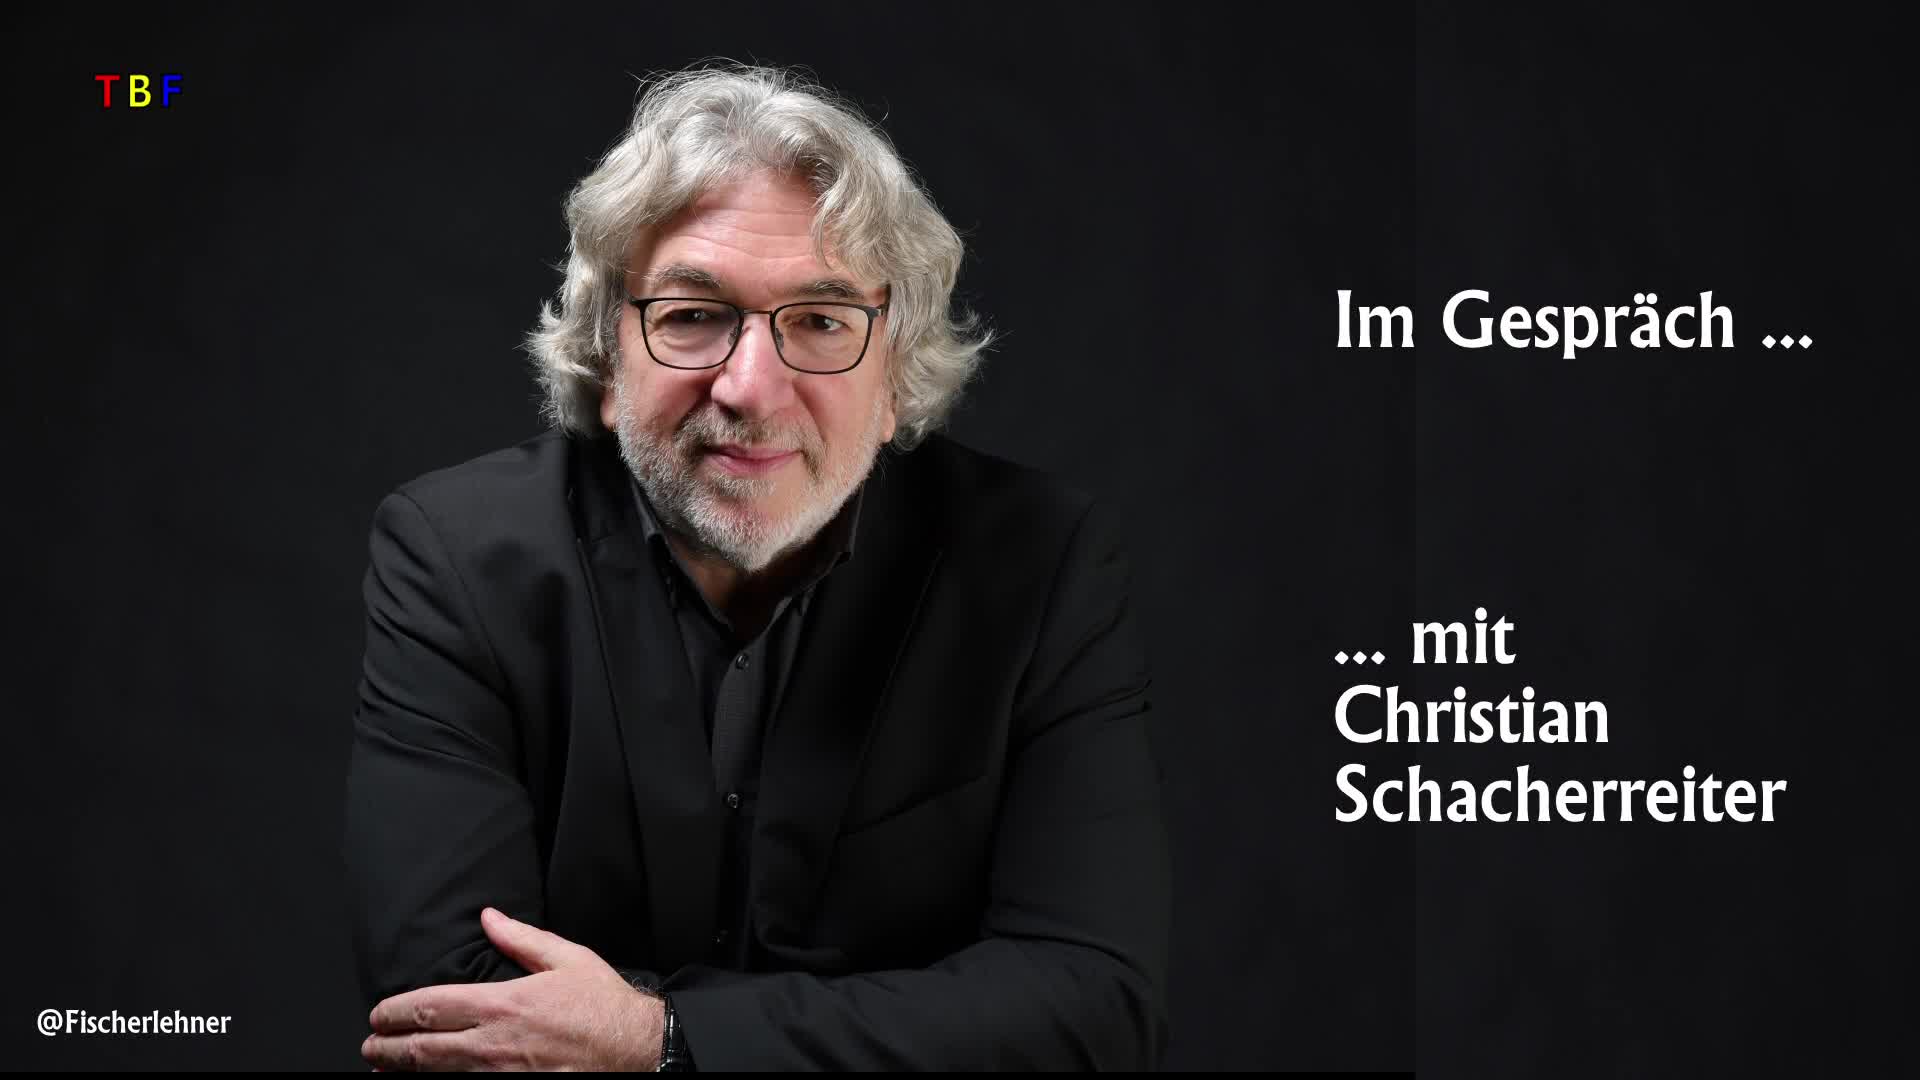 Im Gespräch mit Christian Schacherreiter